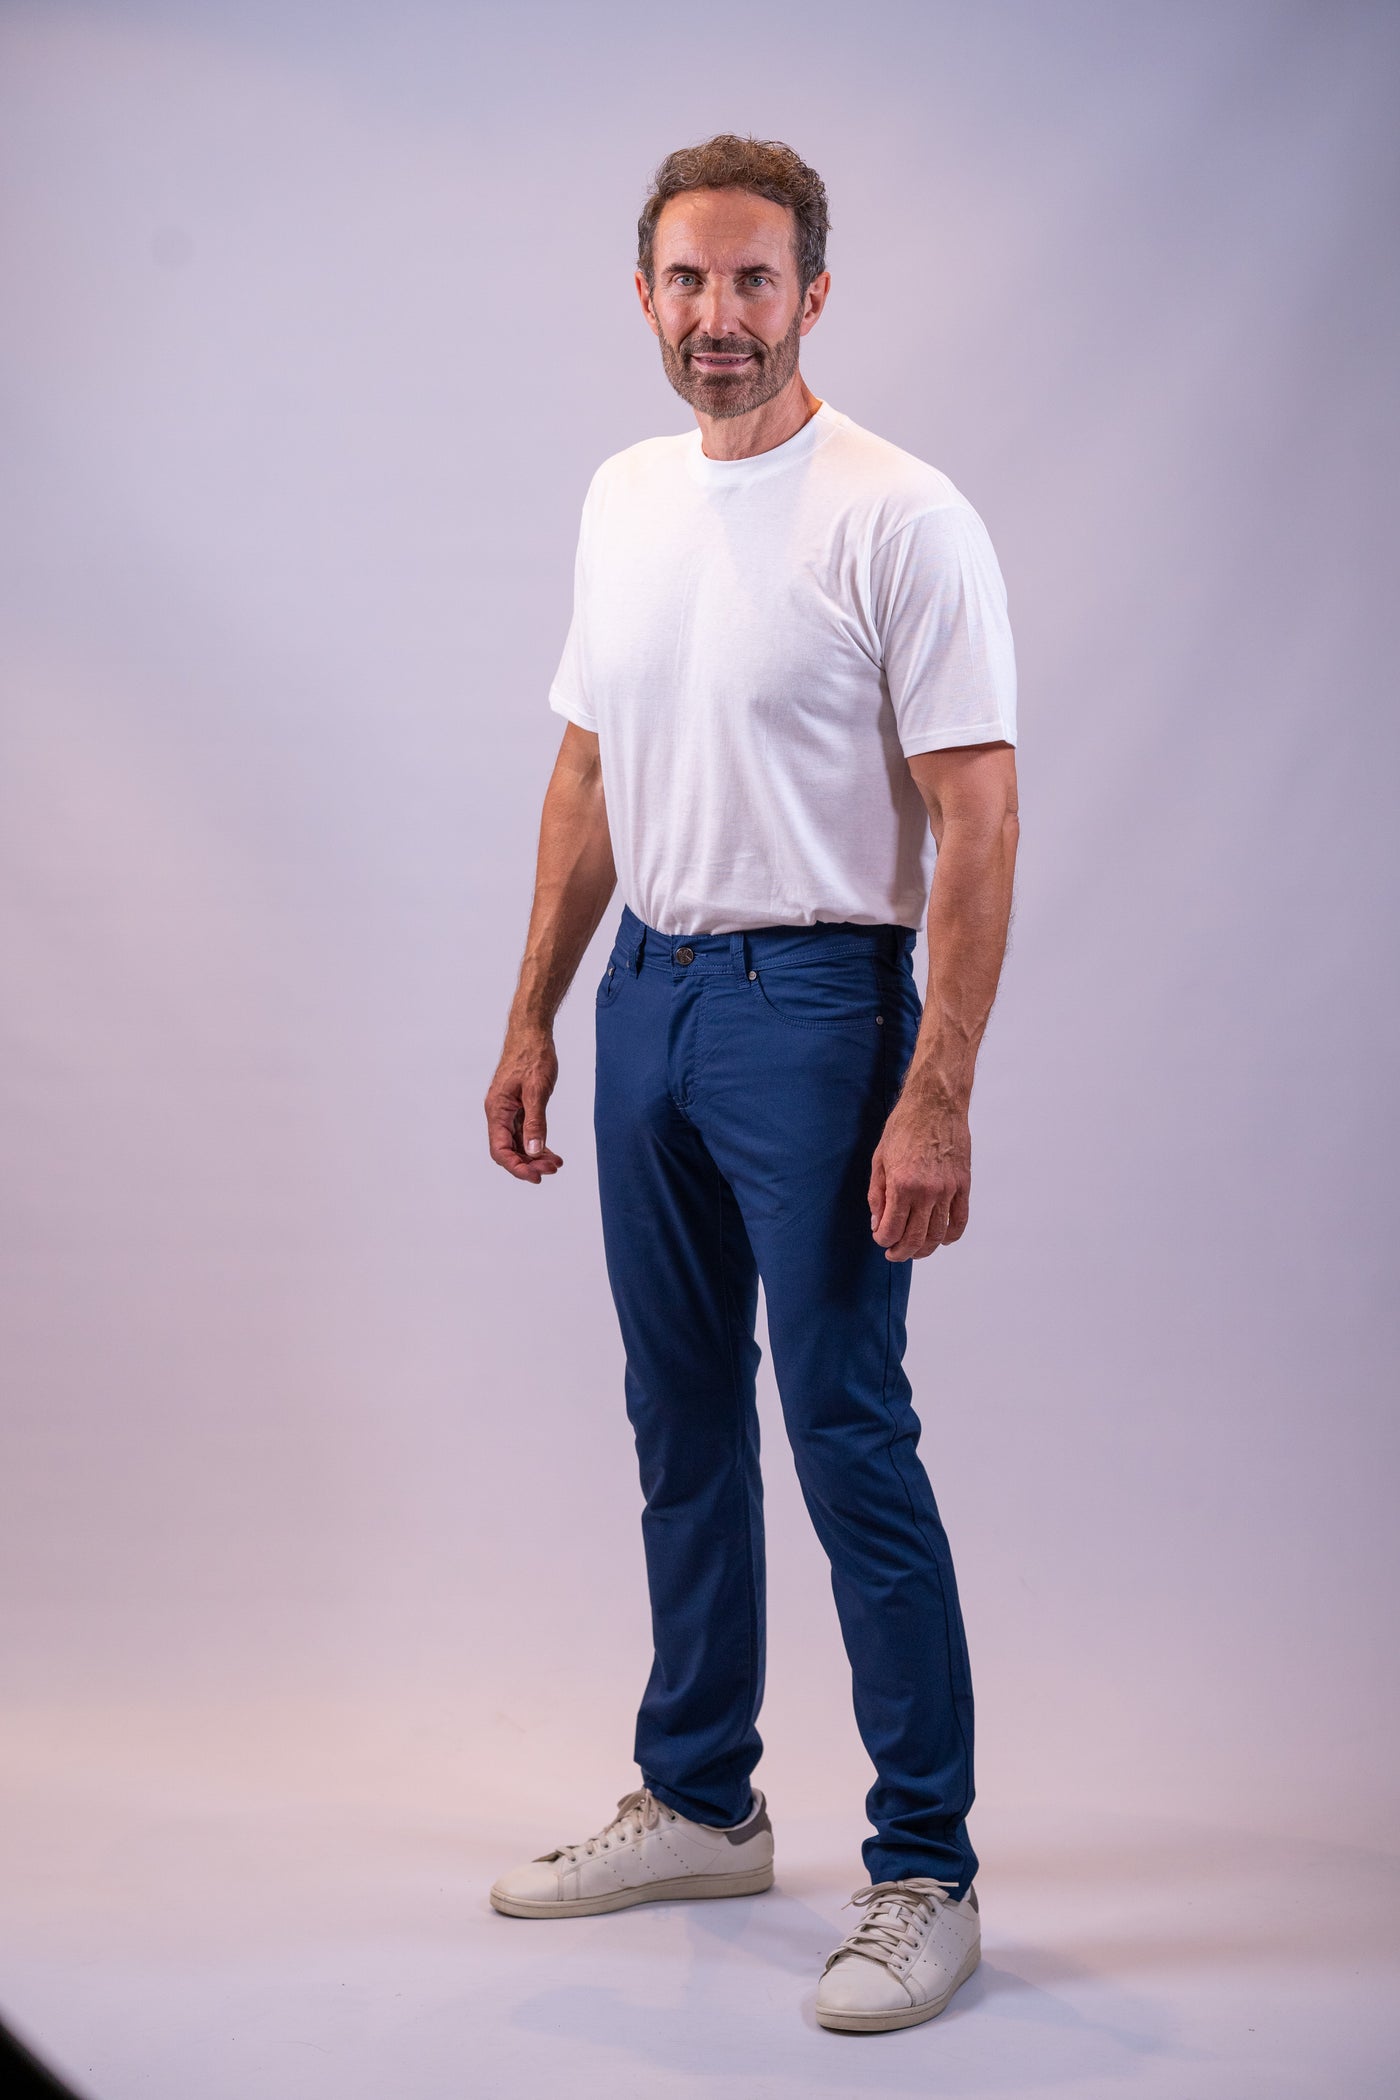 Karl Lagerfeld denim jeans blå